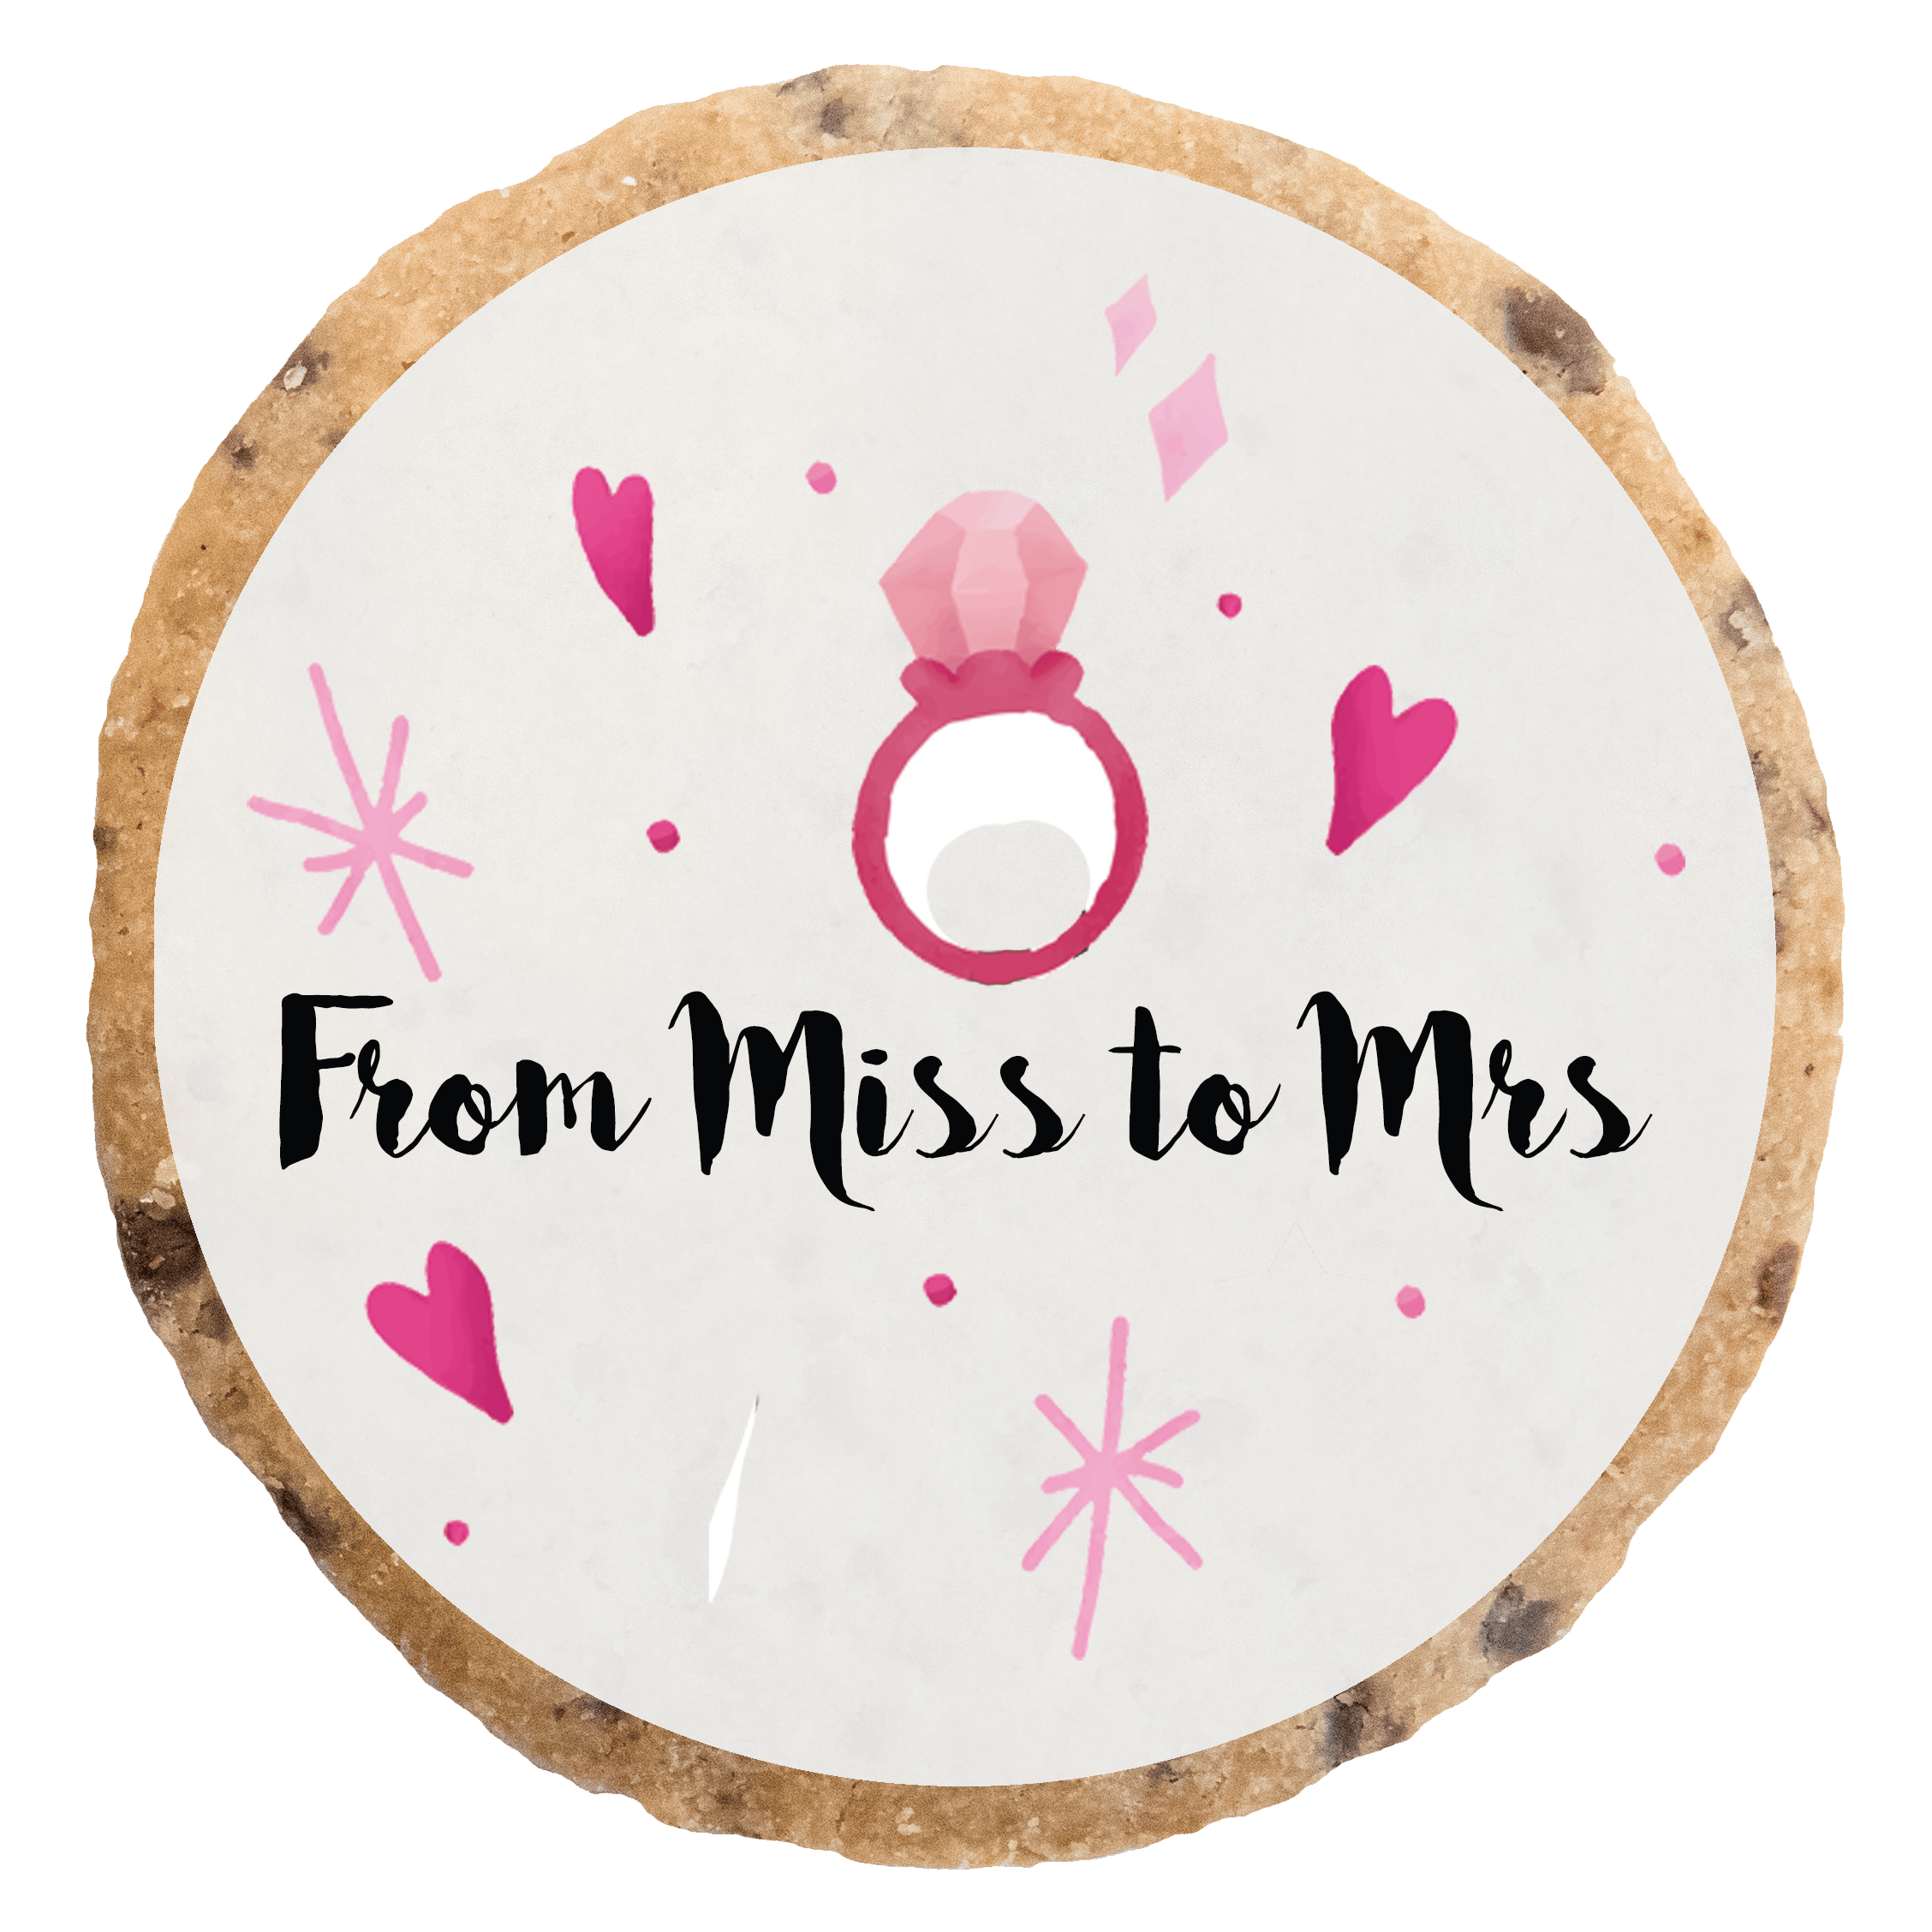 "From Miss to Mrs" MotivKEKS